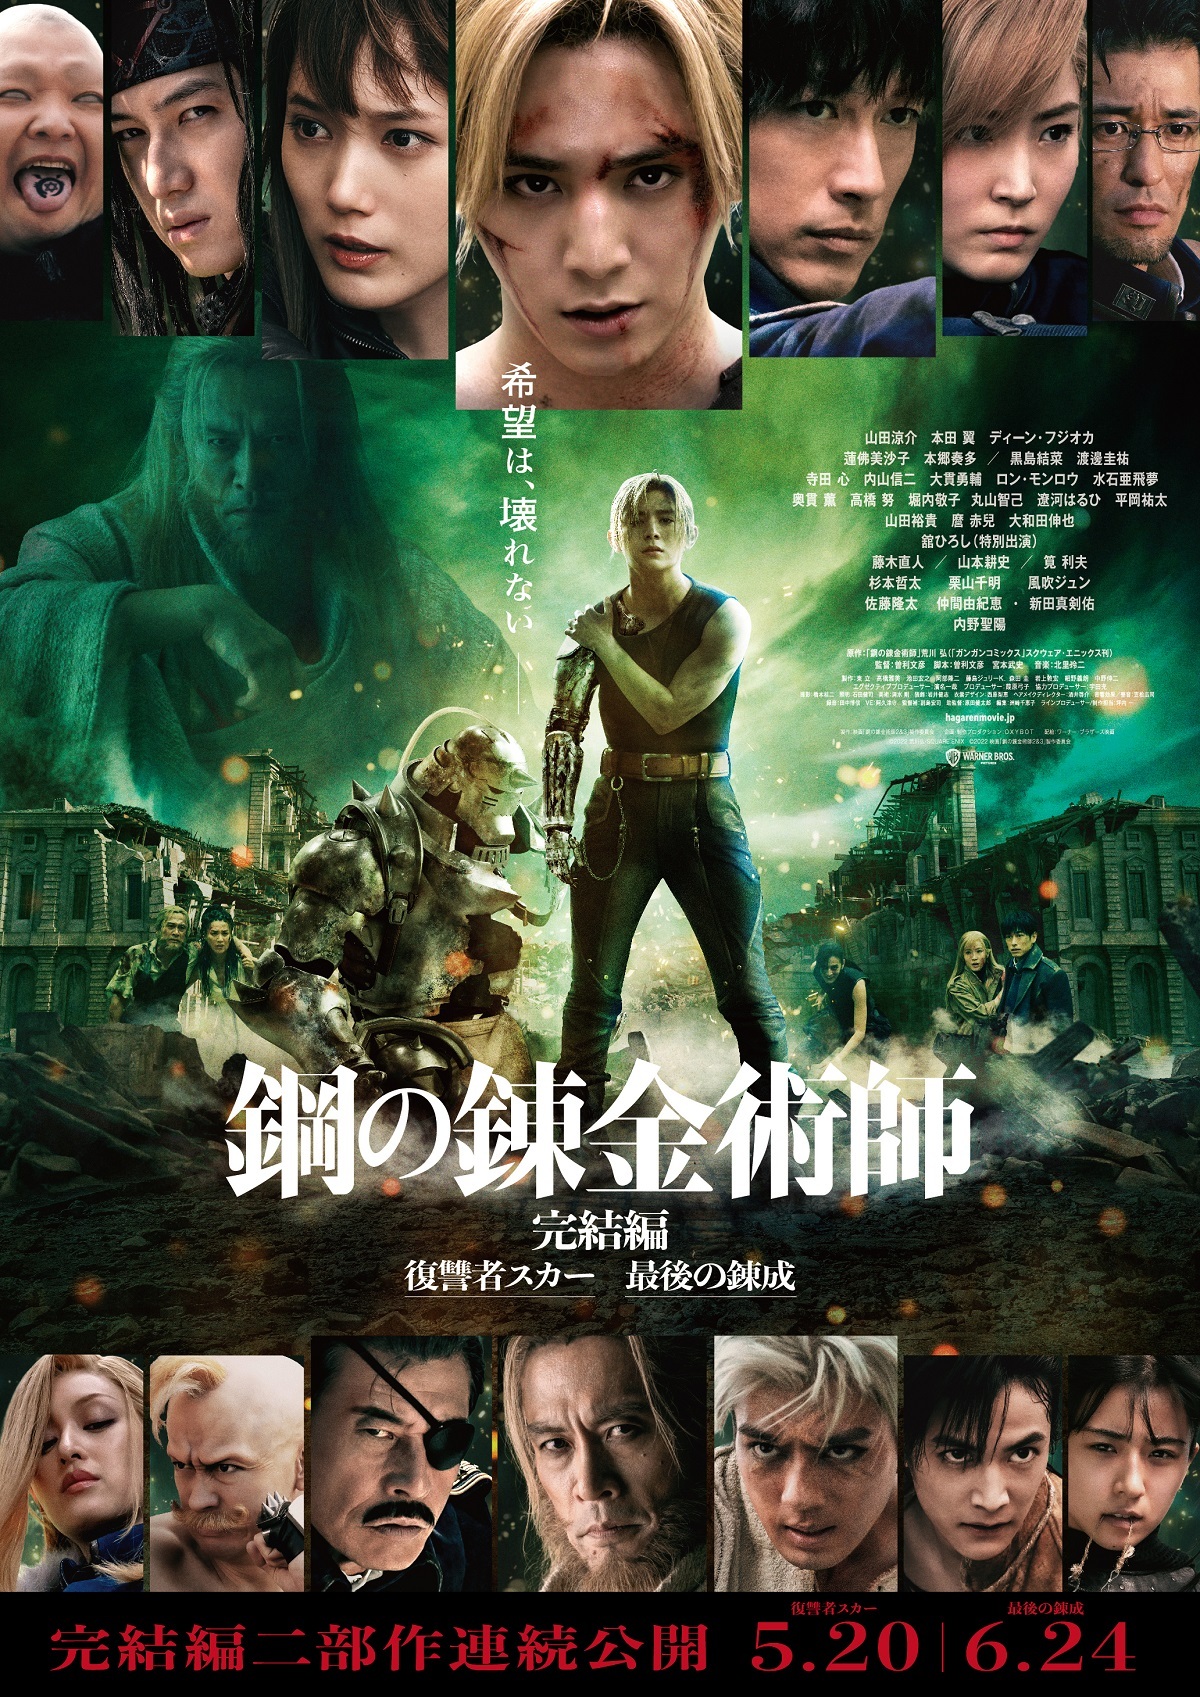 作者亲绘《钢之炼金术师》真人电影海报插画版 5月20日上映